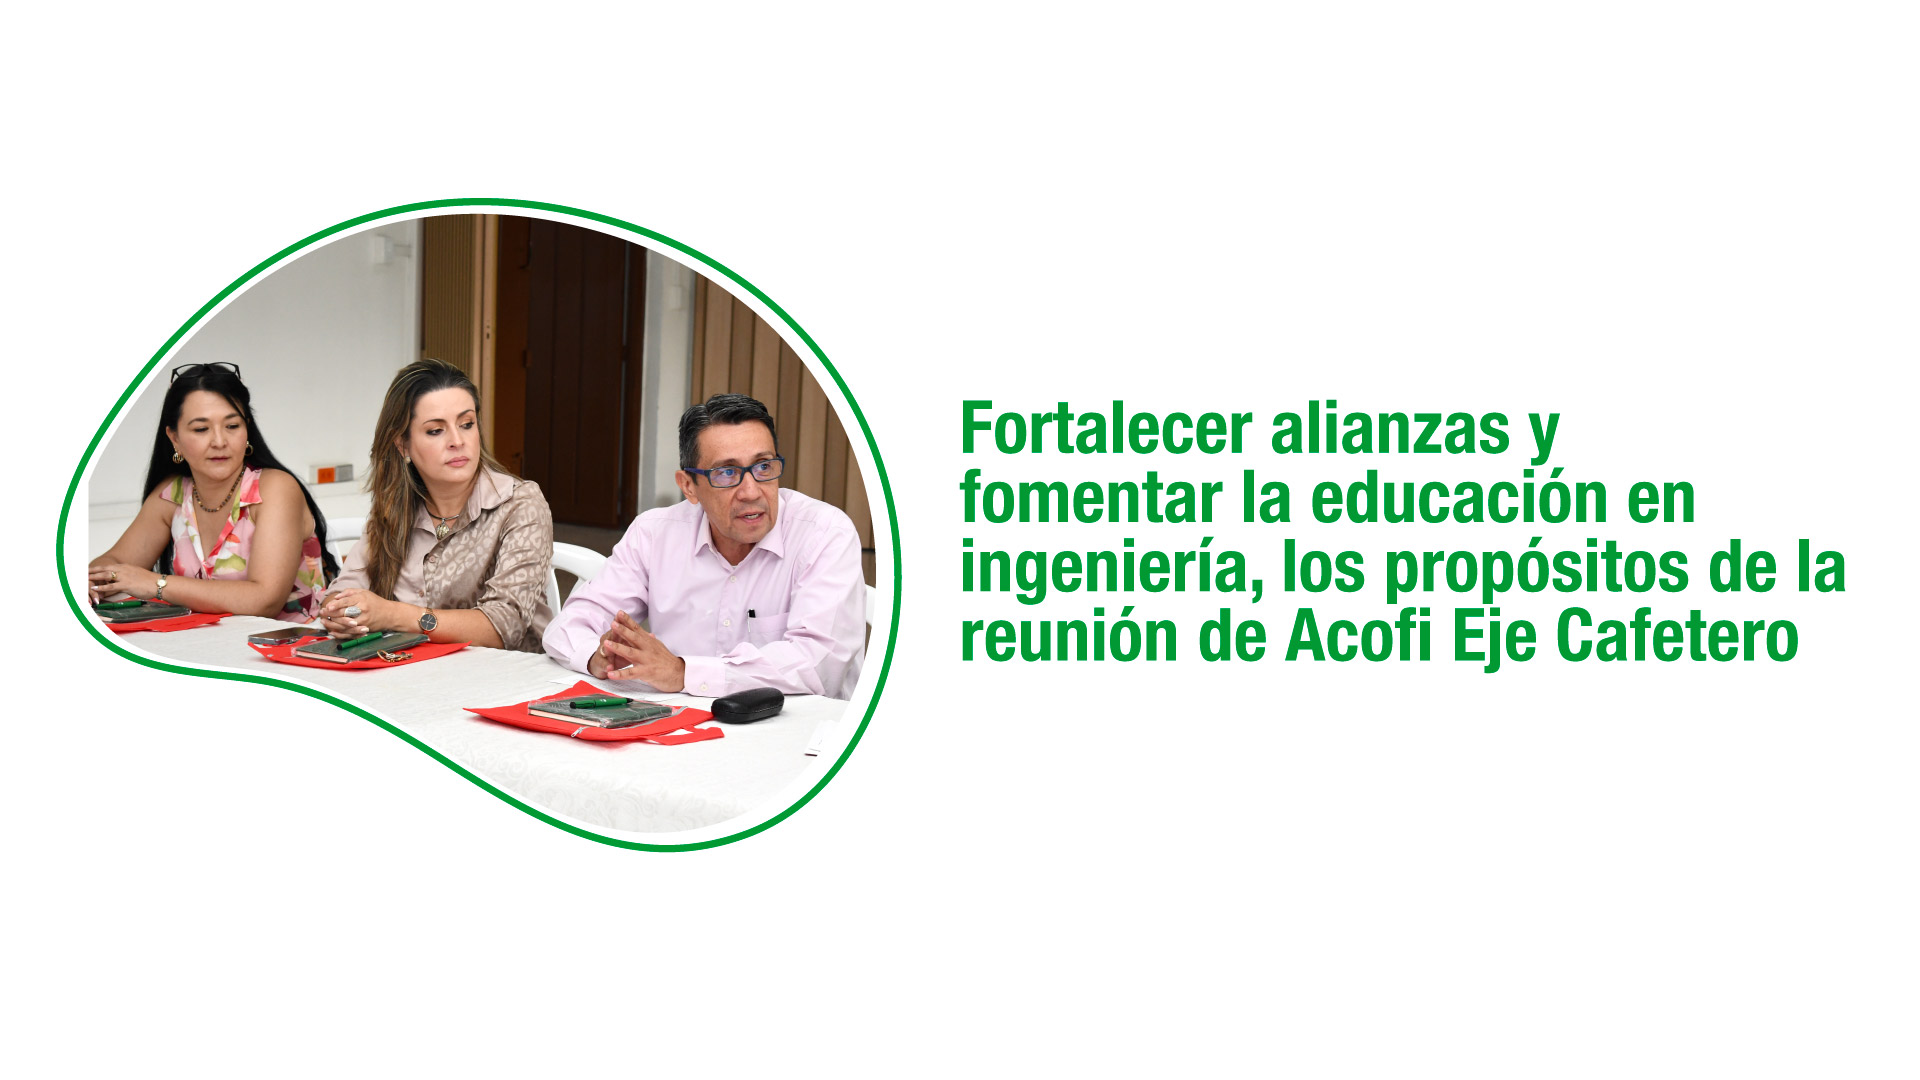 Fortalecer alianzas y fomentar la educación en ingeniería, los propósitos de la reunión de Acofi Eje Cafetero